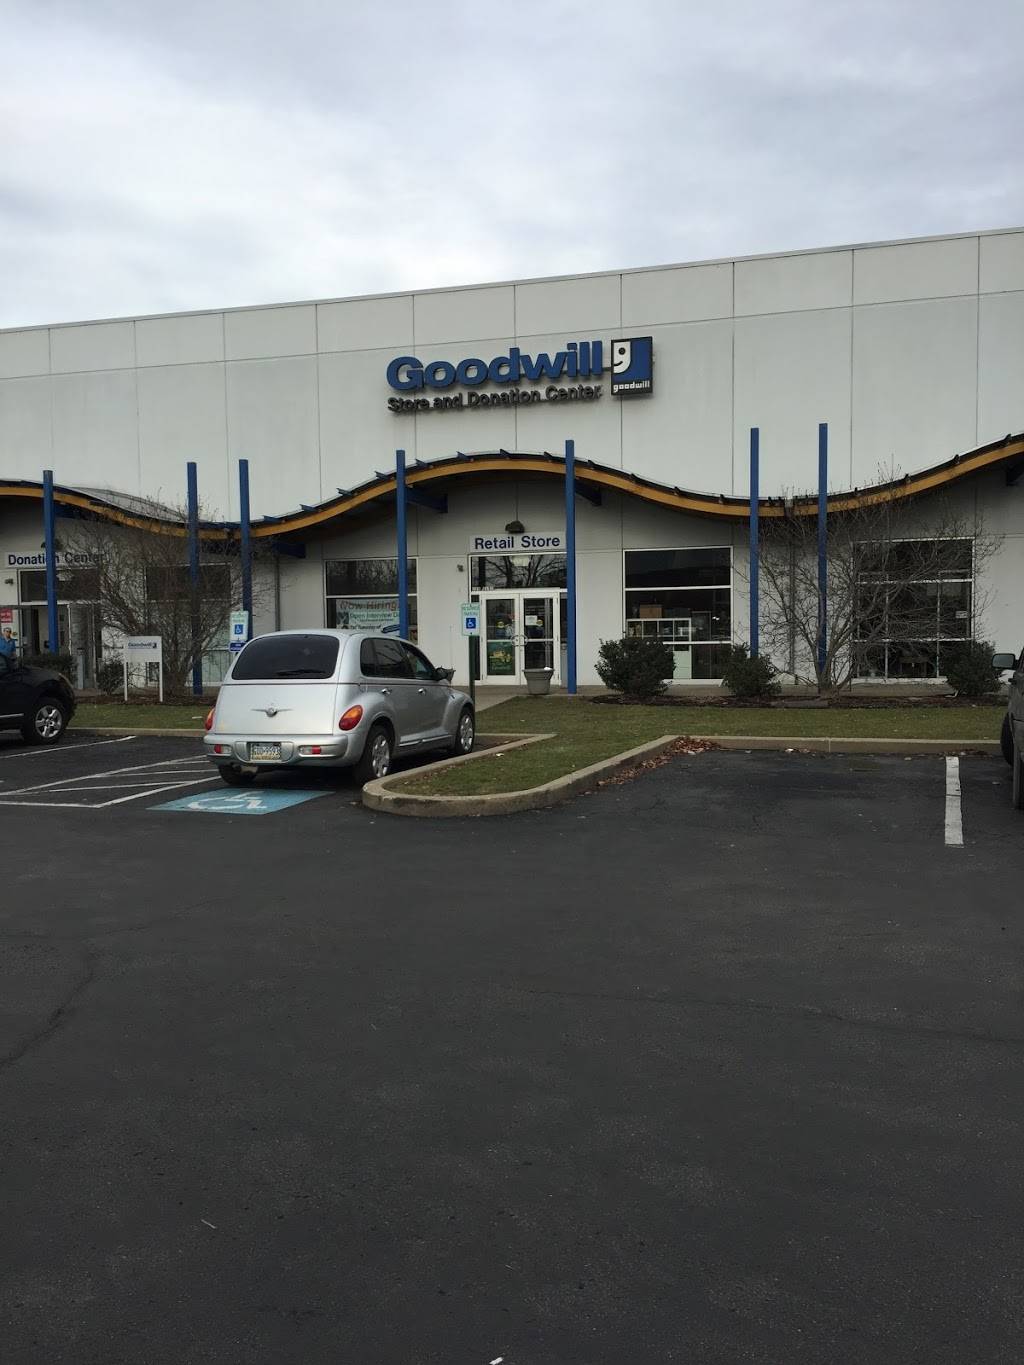 Goodwill | Photo 7 of 10 | Address: 160 52nd St, Pittsburgh, PA 15201, USA | Phone: (412) 632-1888